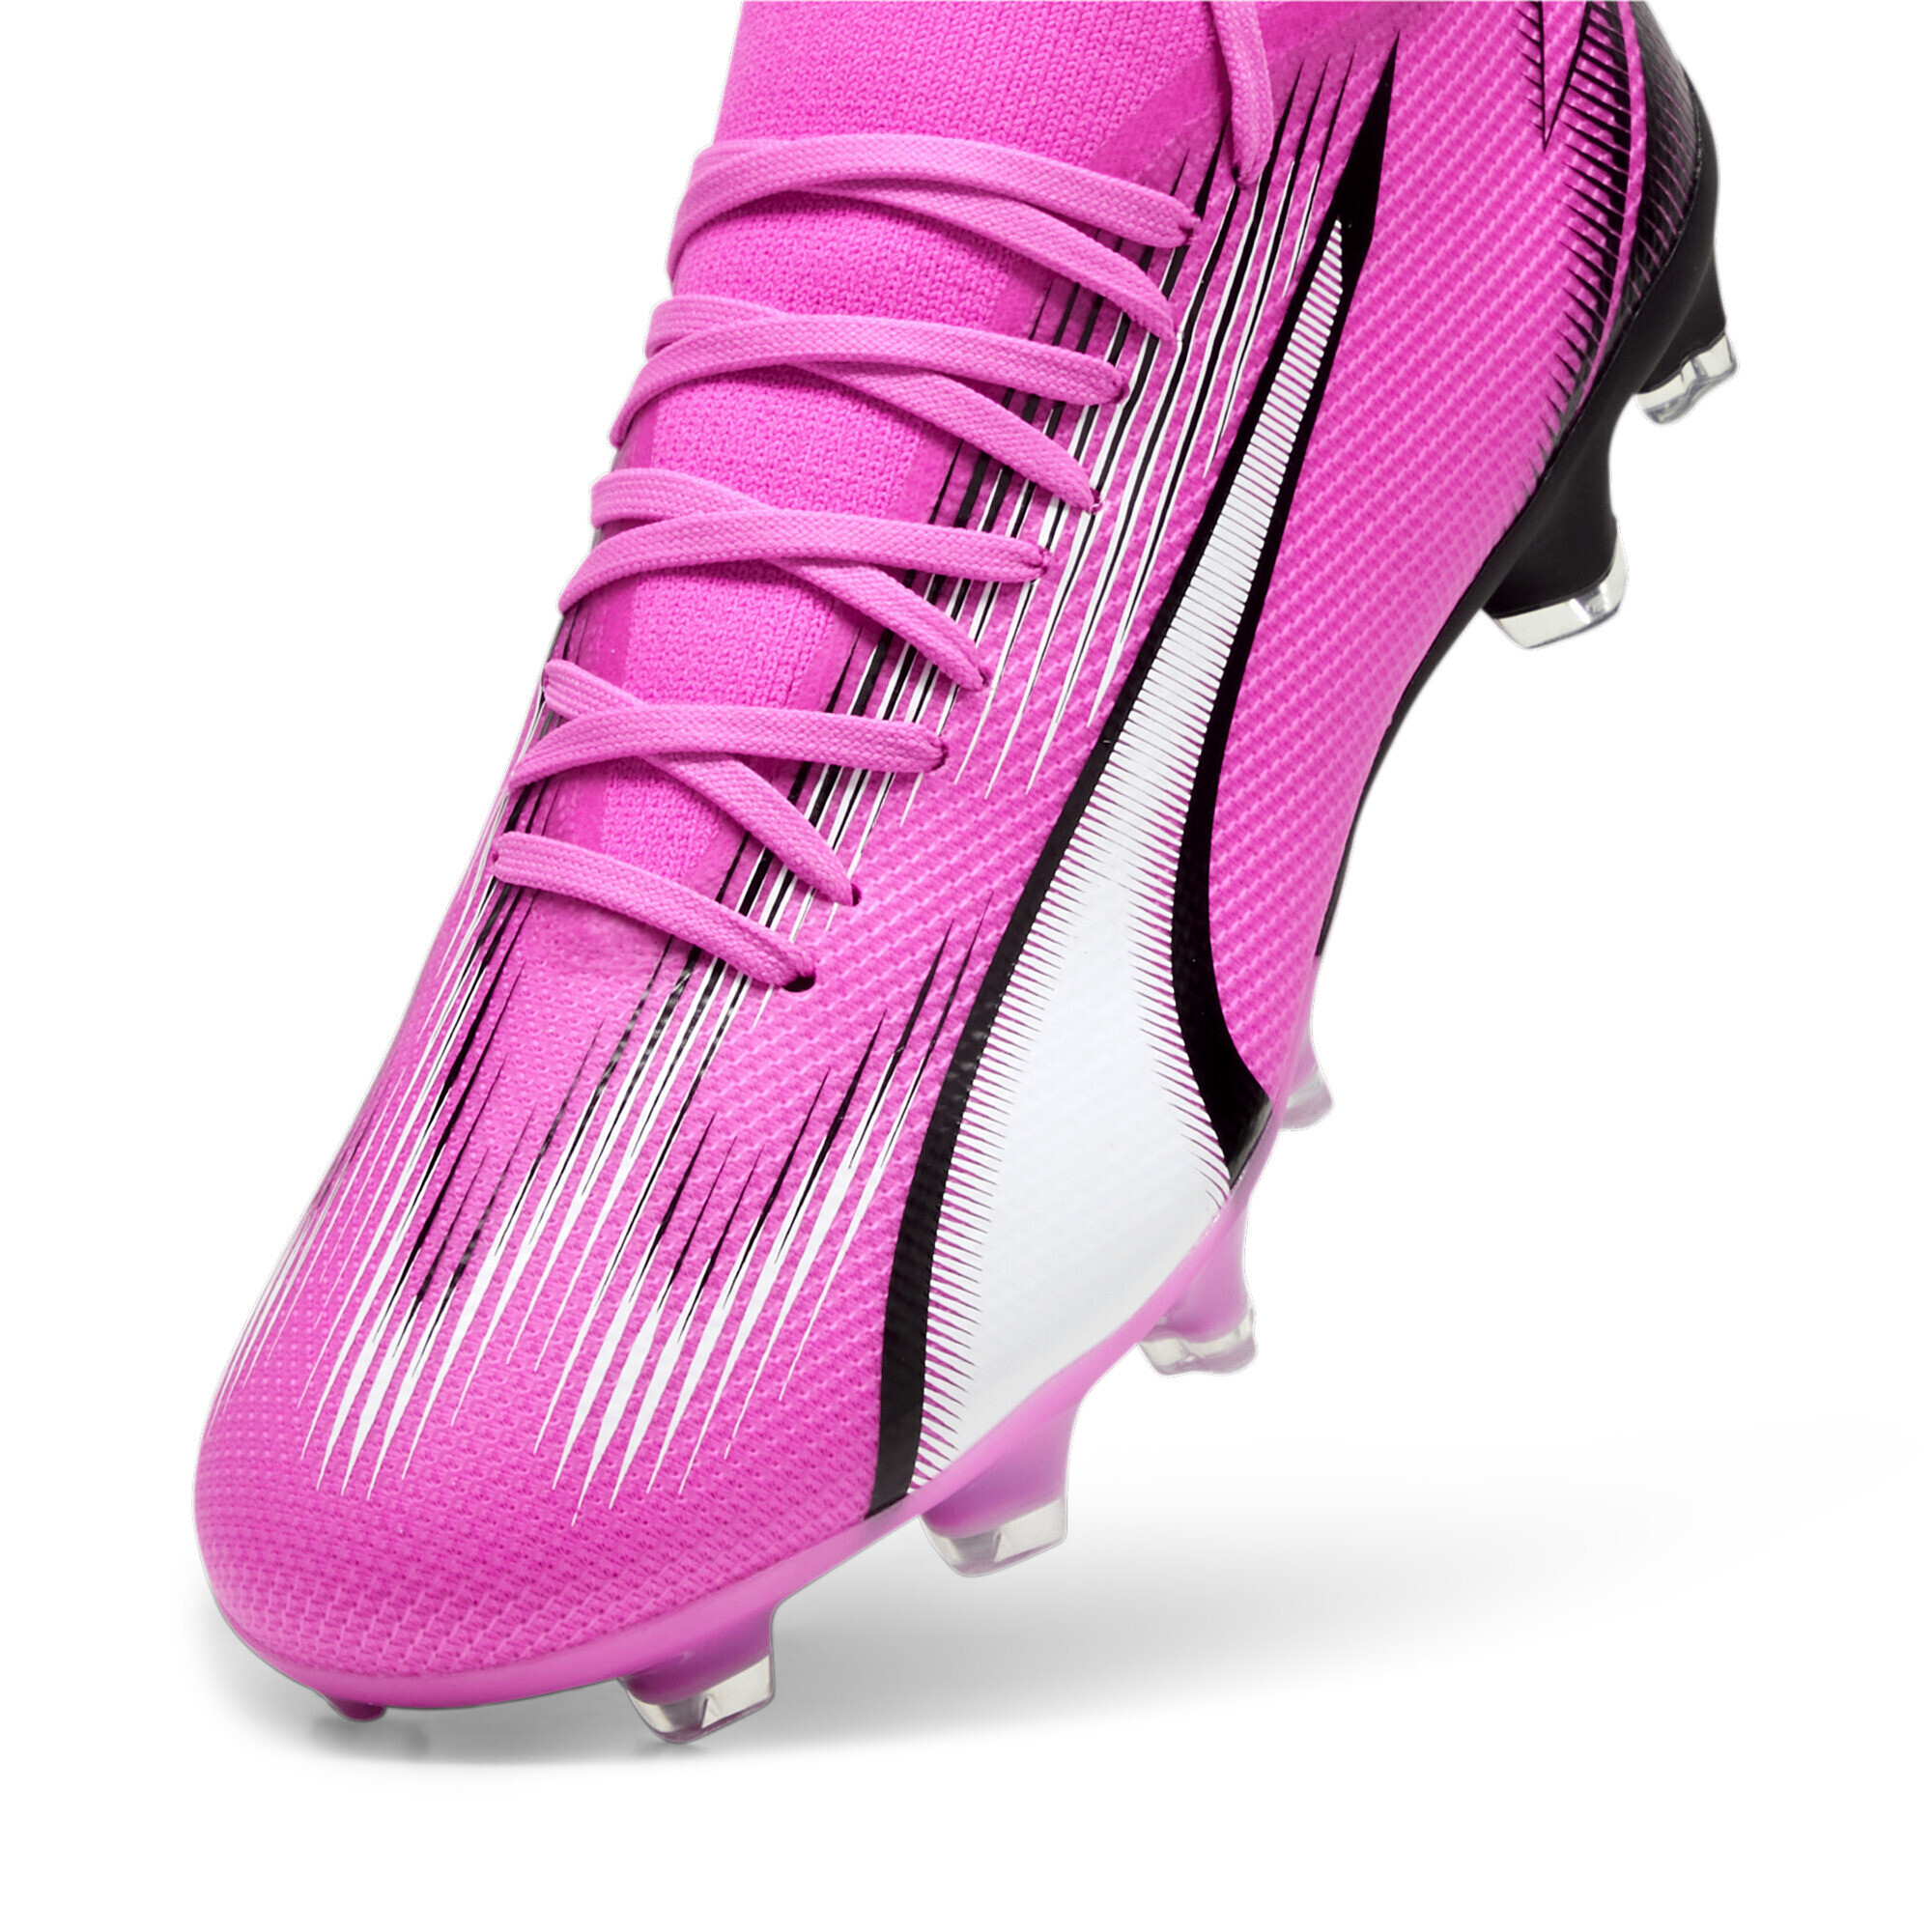 Women's PUMA ULTRA MATCH FG/AG Football Boots In Pink, Size EU 40